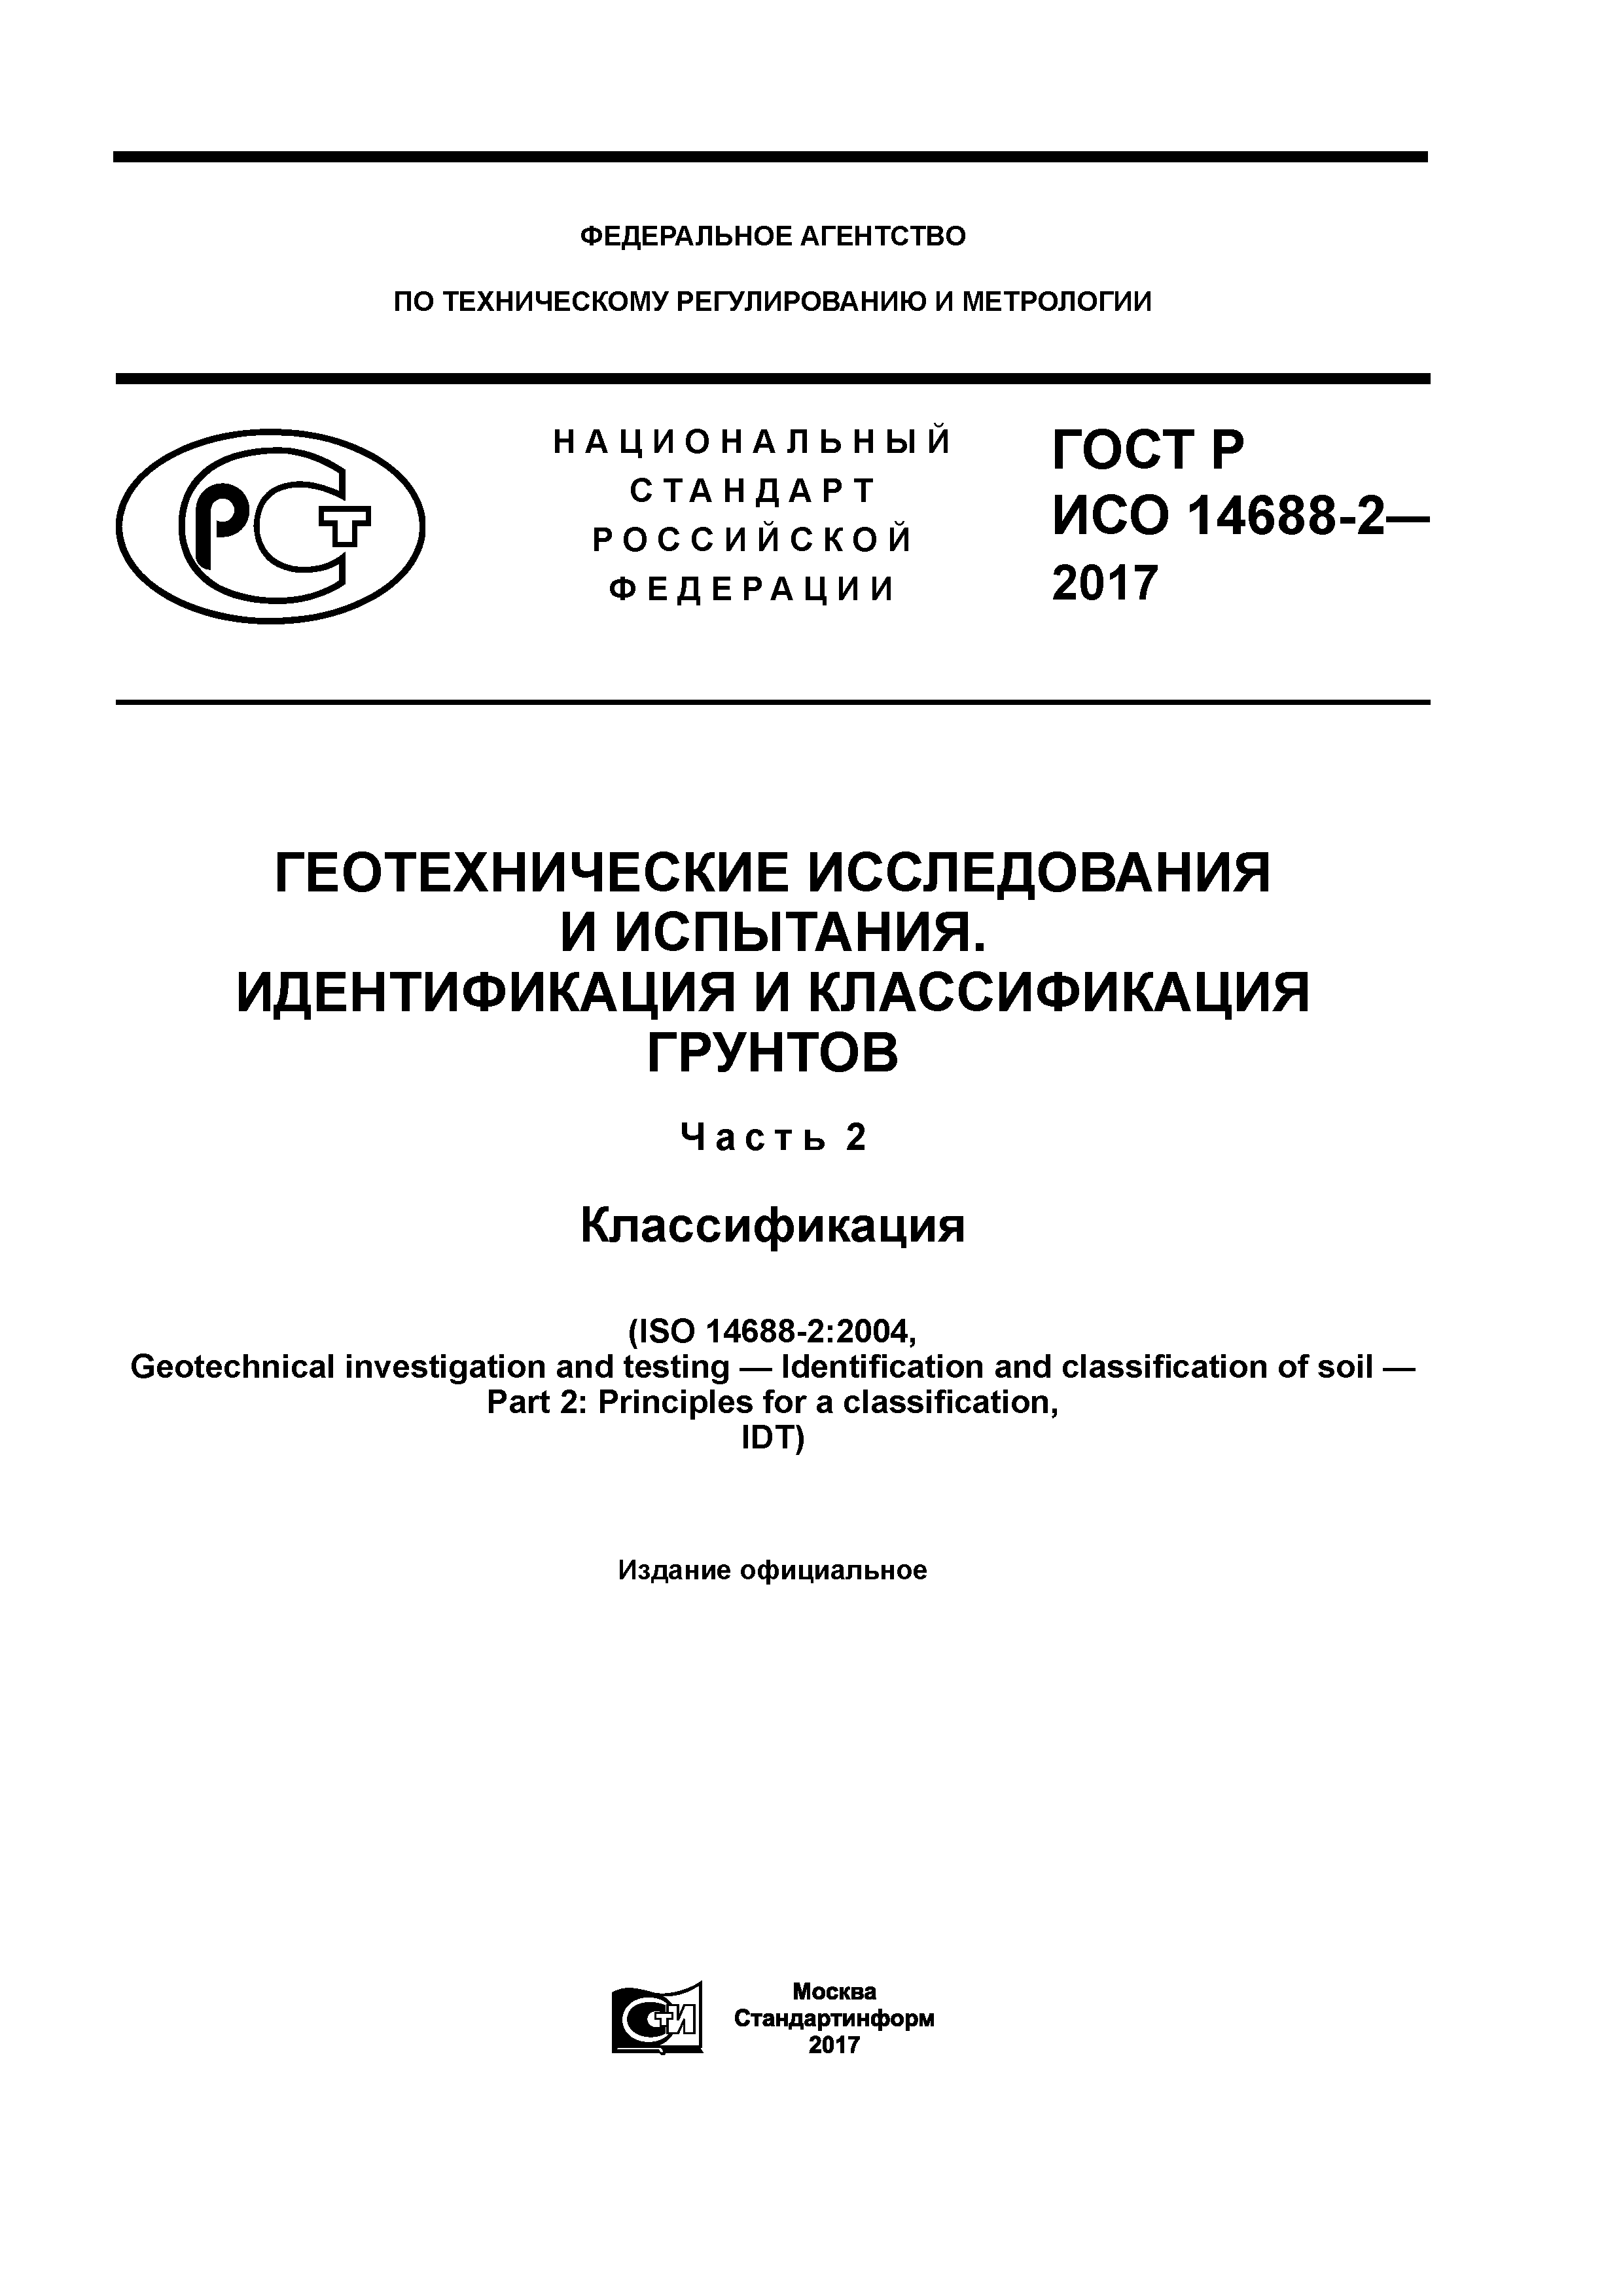 ГОСТ Р ИСО 14688-2-2017